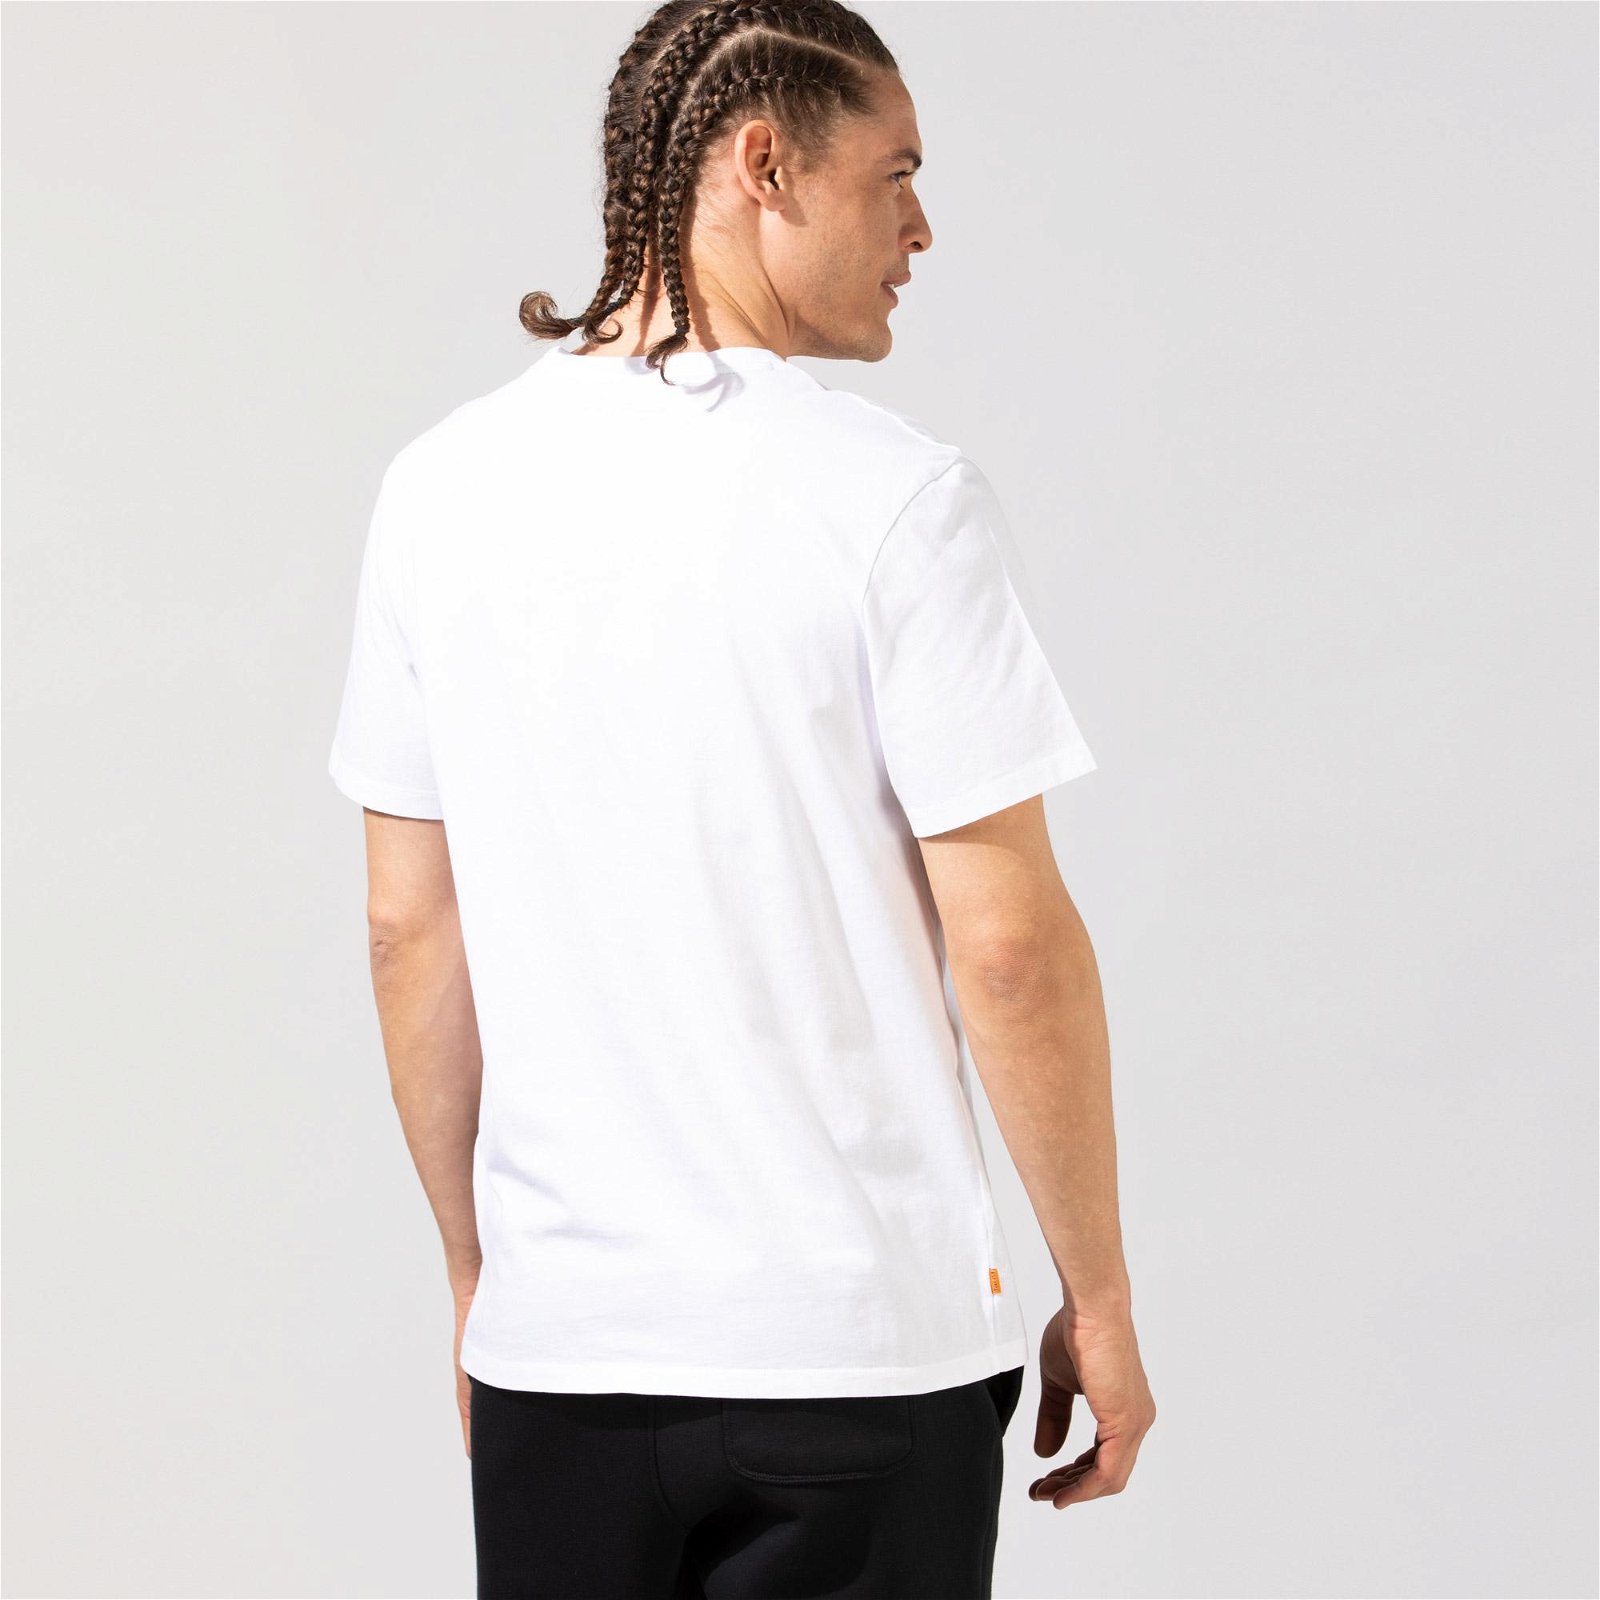 Timberland Brand Carrier Mini Linear Erkek Beyaz T-Shirt